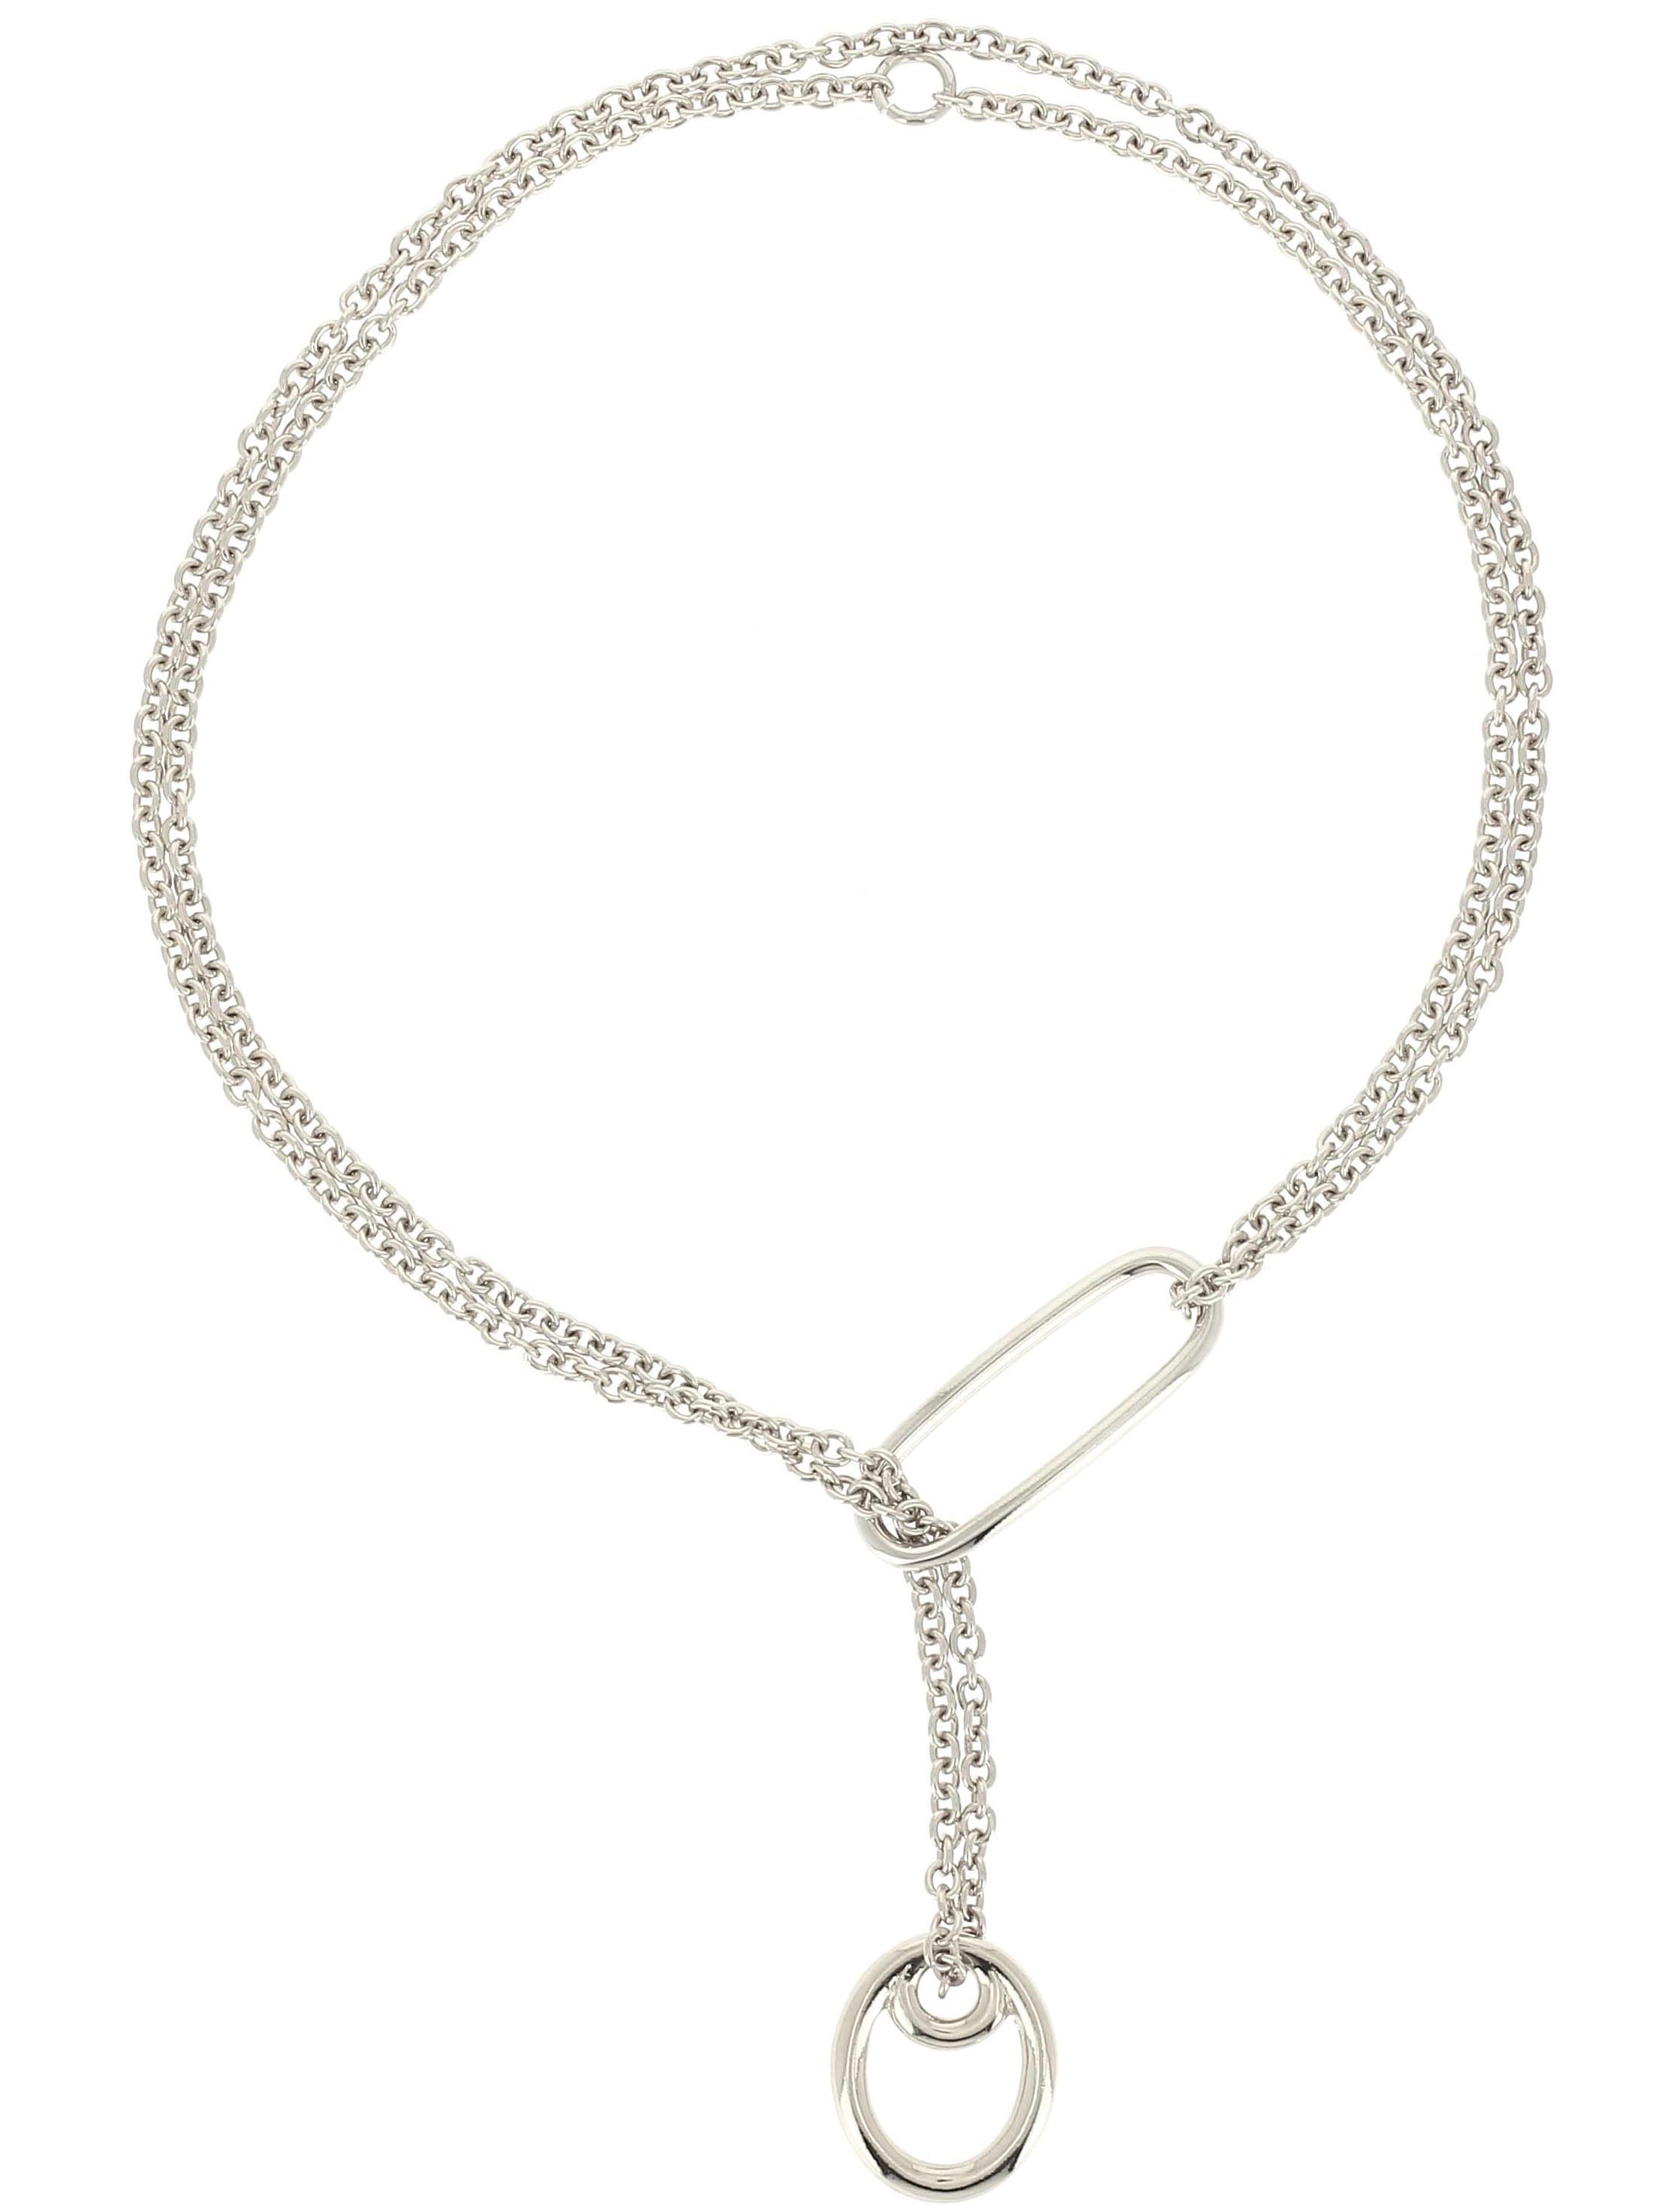 〔Philippe Audibert〕Atara chain necklace